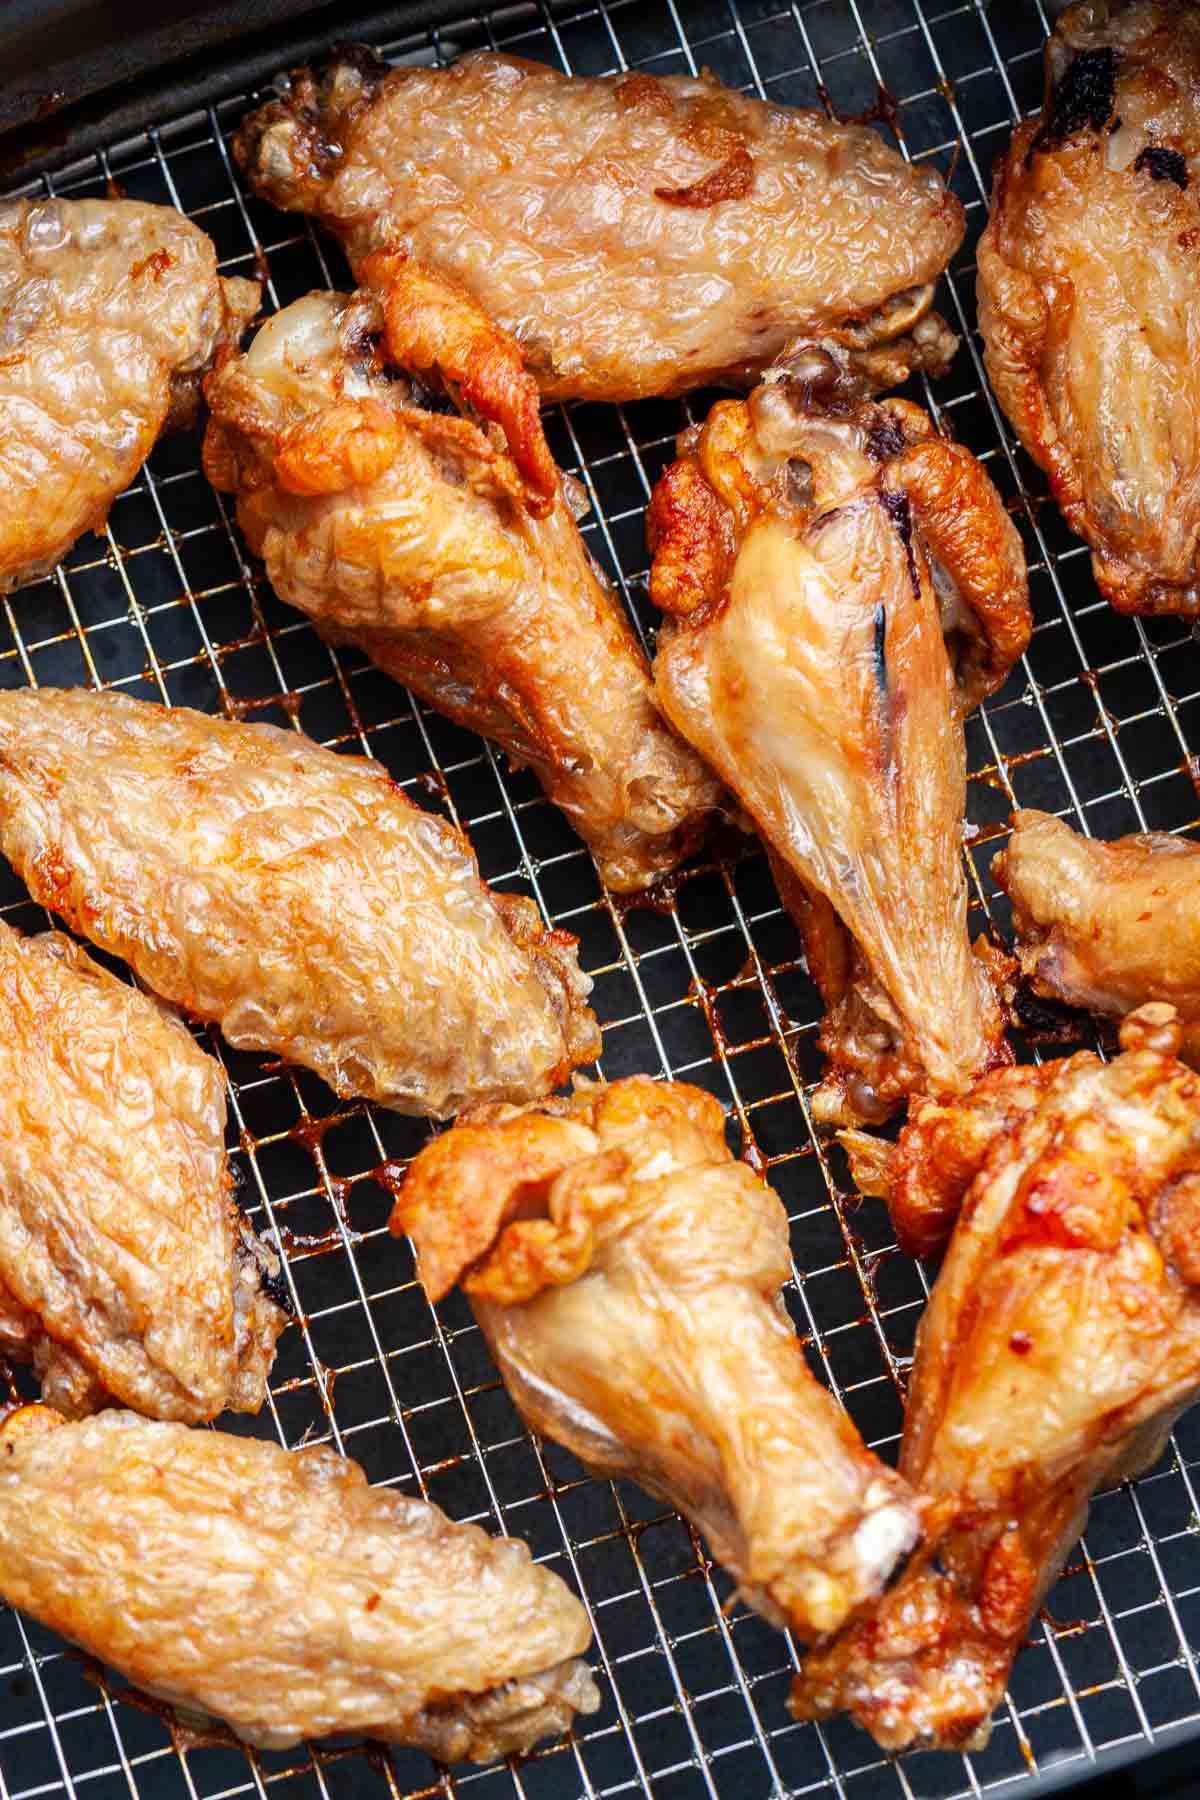 Air-fried chicken wings in an Air Fryer basket.